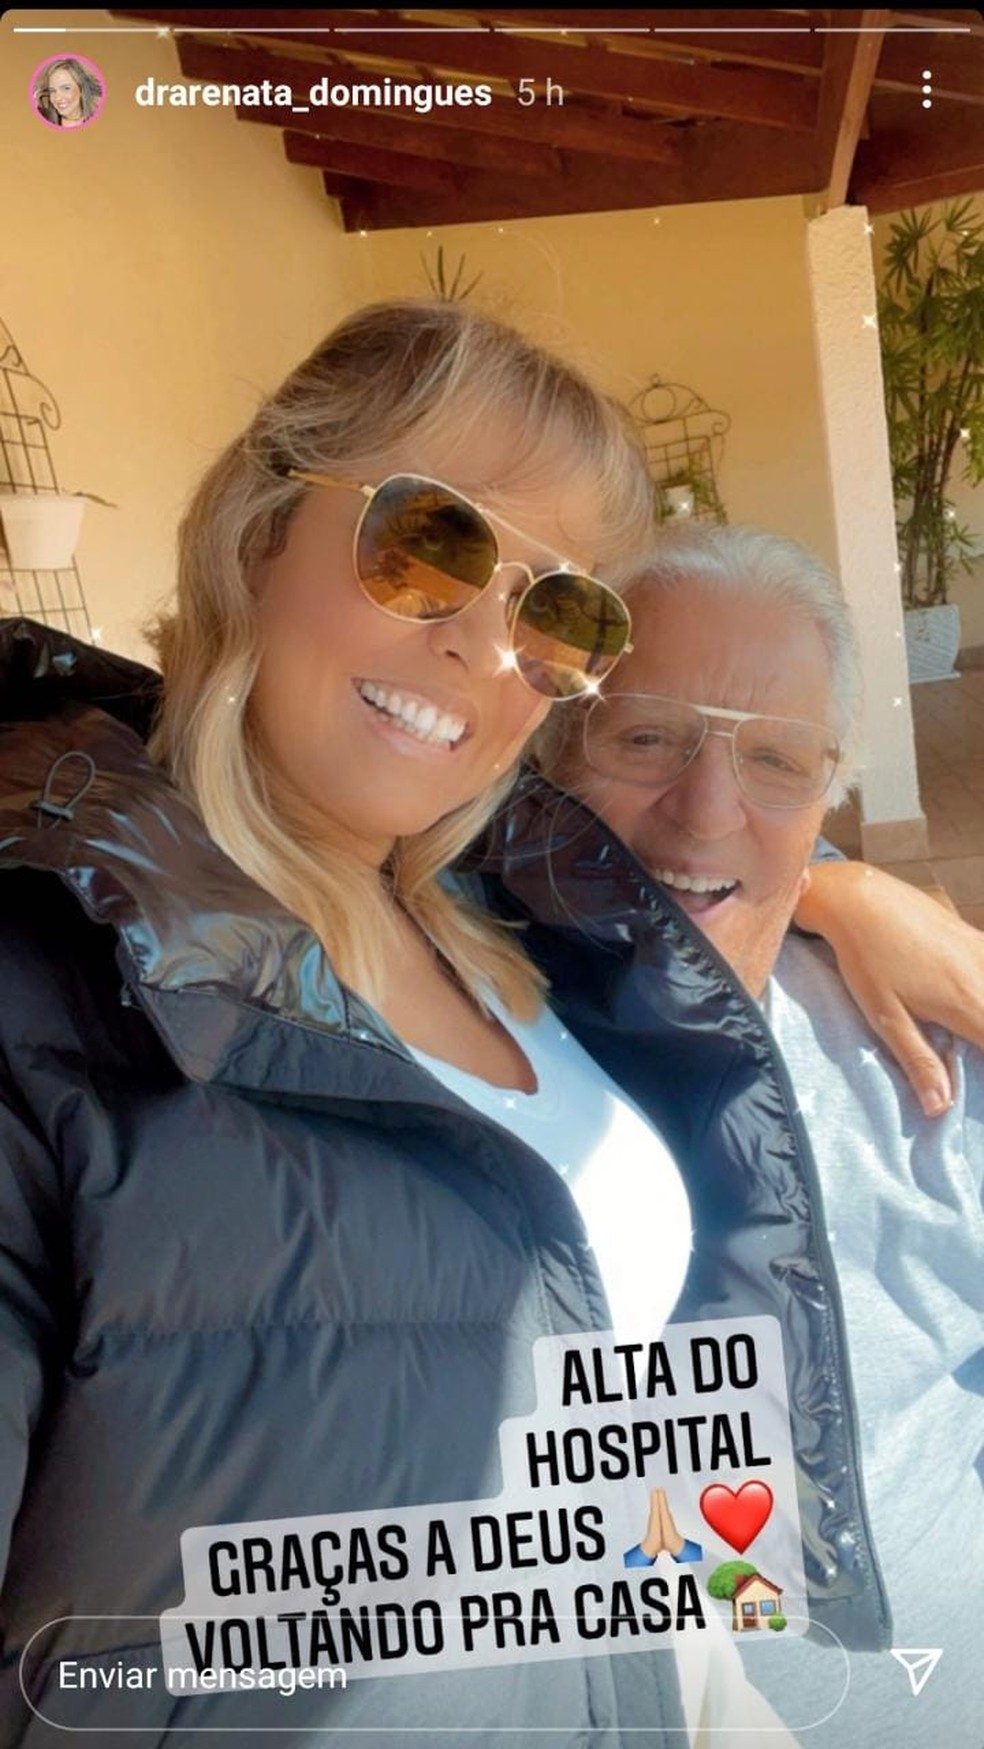 Renata Domingues, esposa de Carlos Alberto de Nóbrega, posta foto com o marido após alta hospitalar nesta segunda-feira (25). — Foto: Reprodução/Instagram